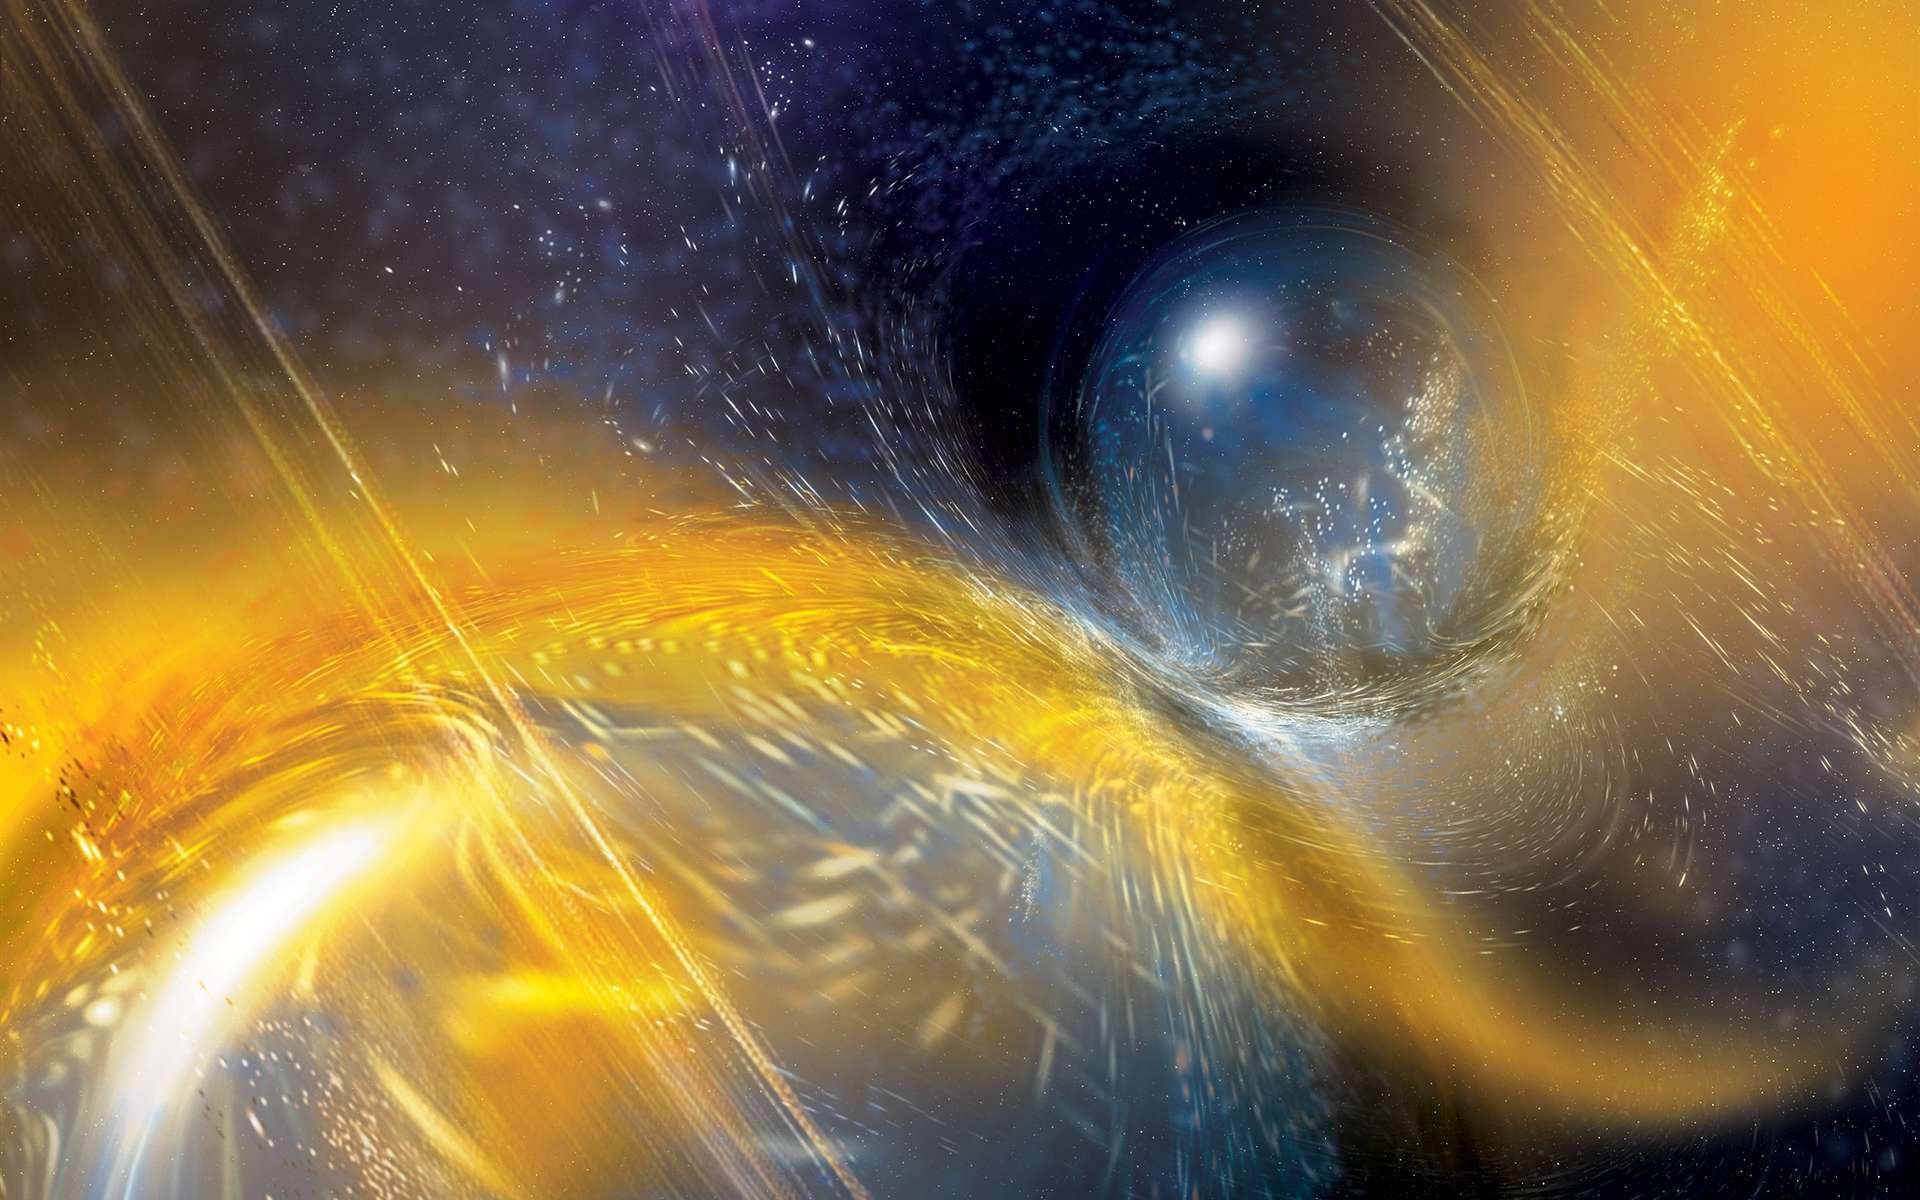 Ondes gravitationnelles : une seconde et spectaculaire collision d'étoiles à neutrons découverte